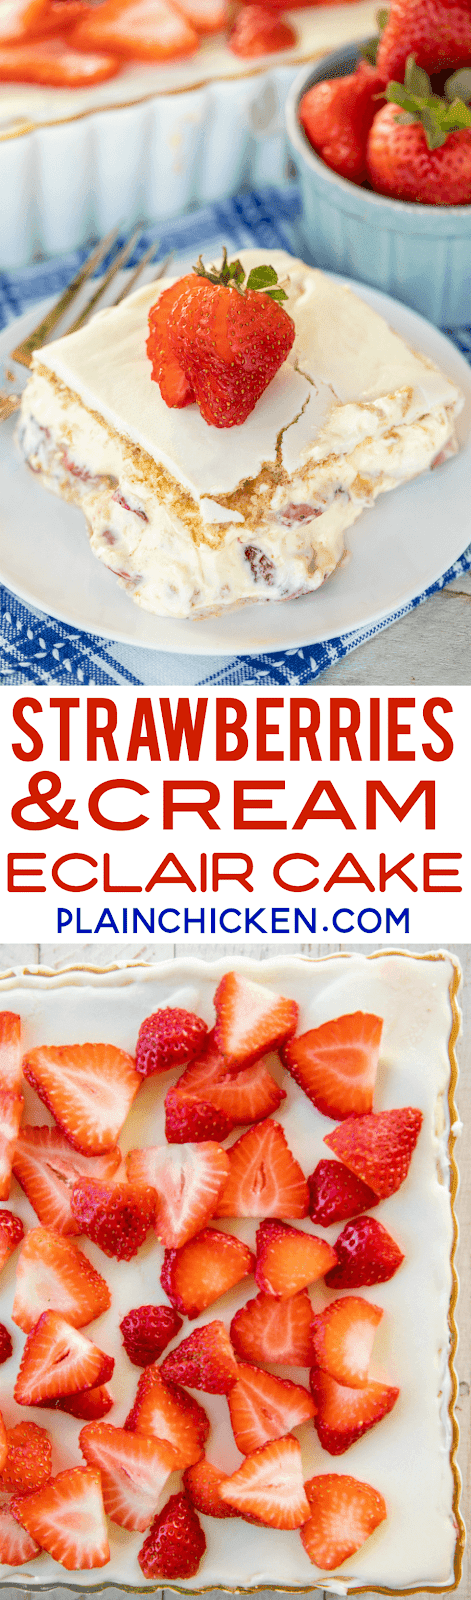 Strawberries and Cream Eclair Cake | Plain Chicken®